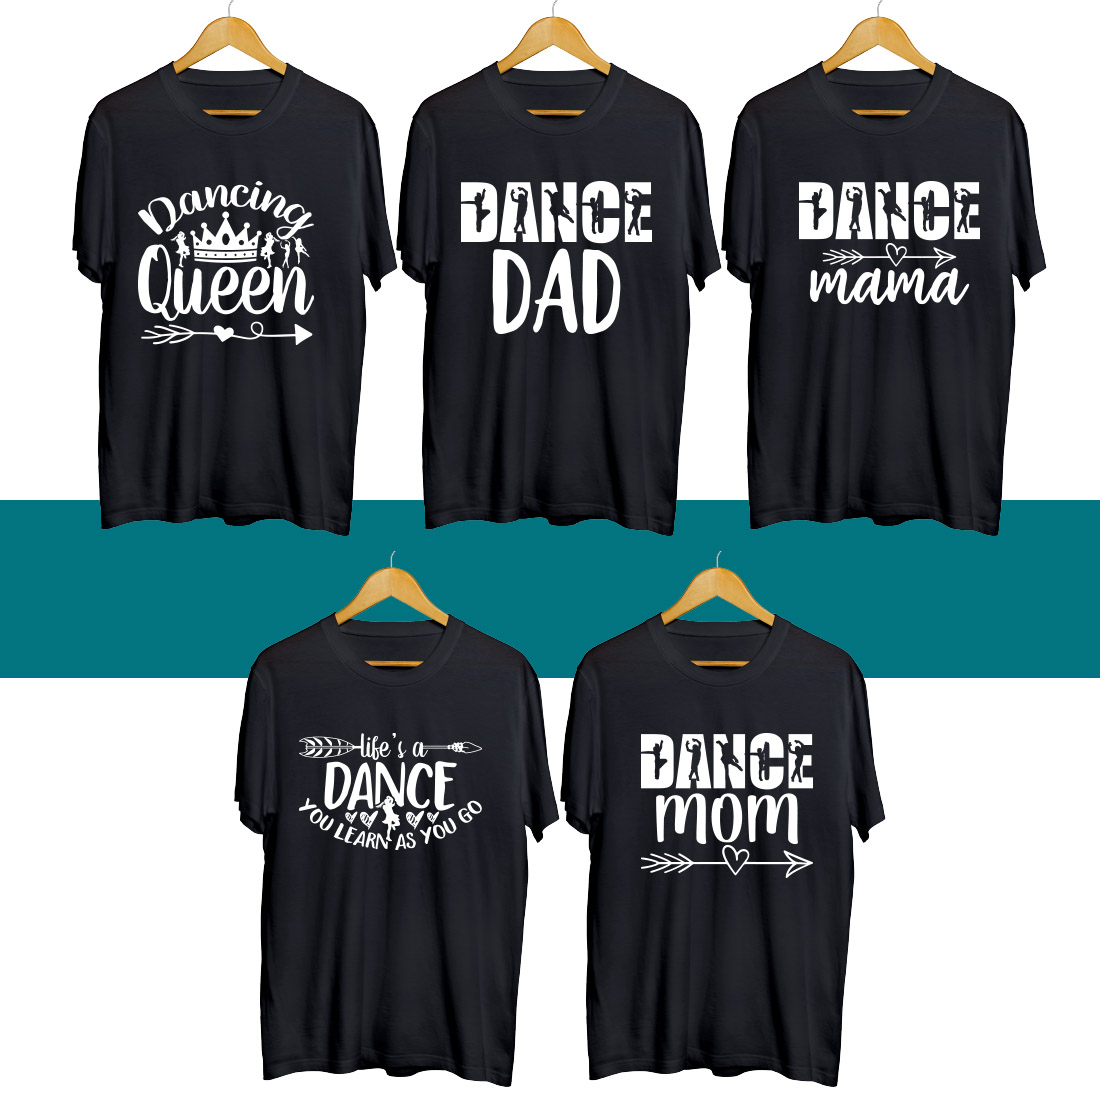 Dance SVG T Shirt Designs Bundle cover image.